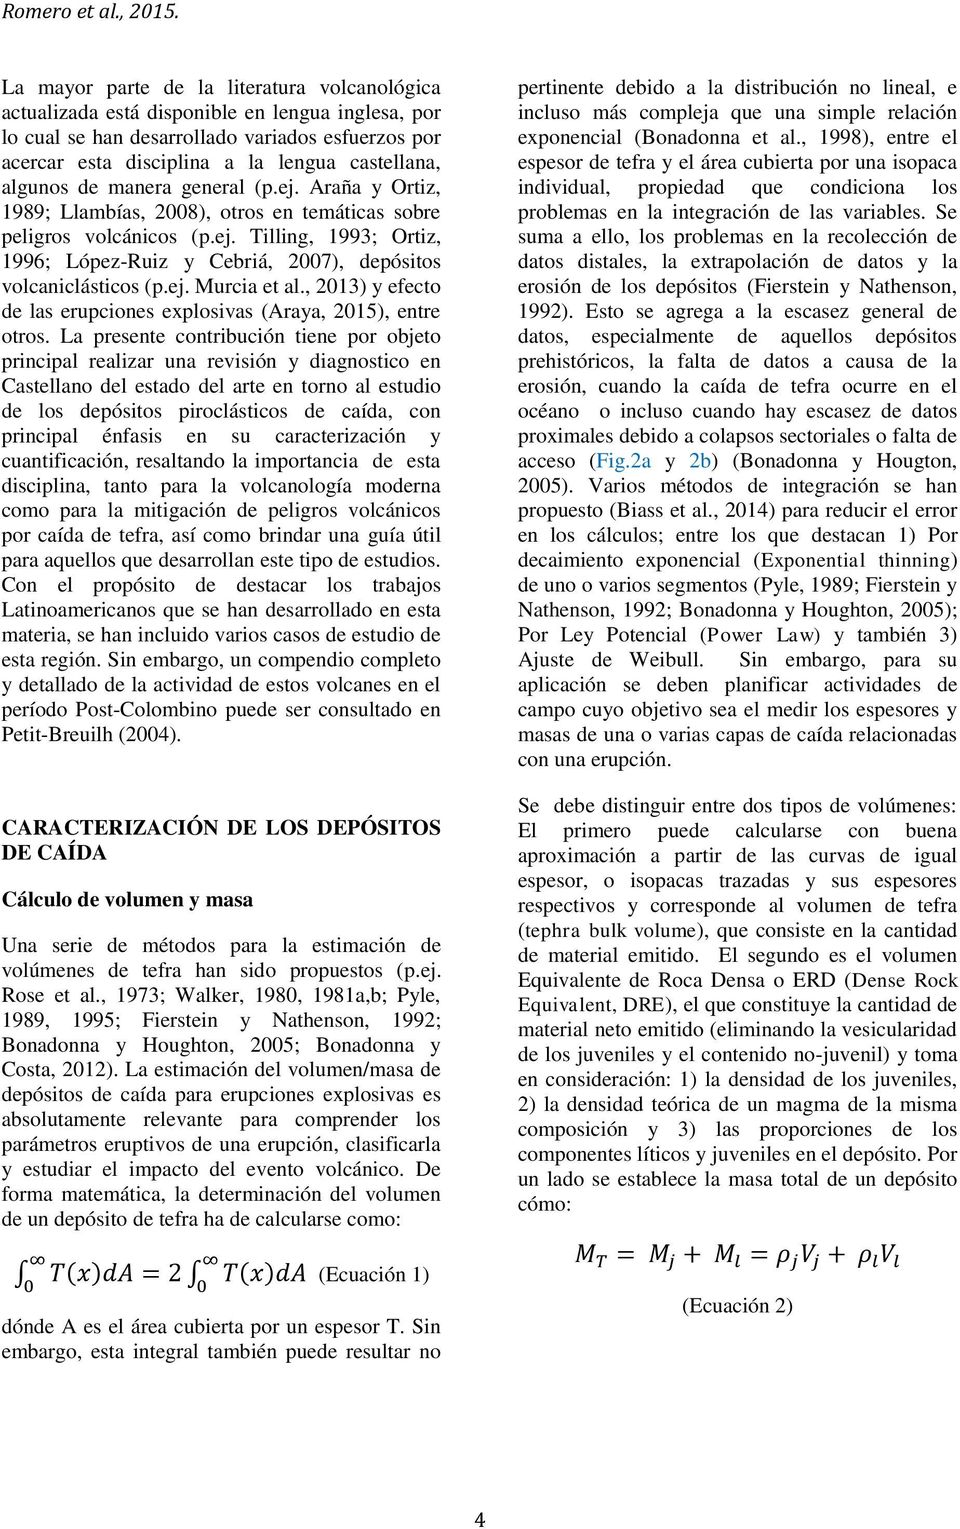 ej. Murcia et al., 2013) y efecto de las erupciones explosivas (Araya, 2015), entre otros.